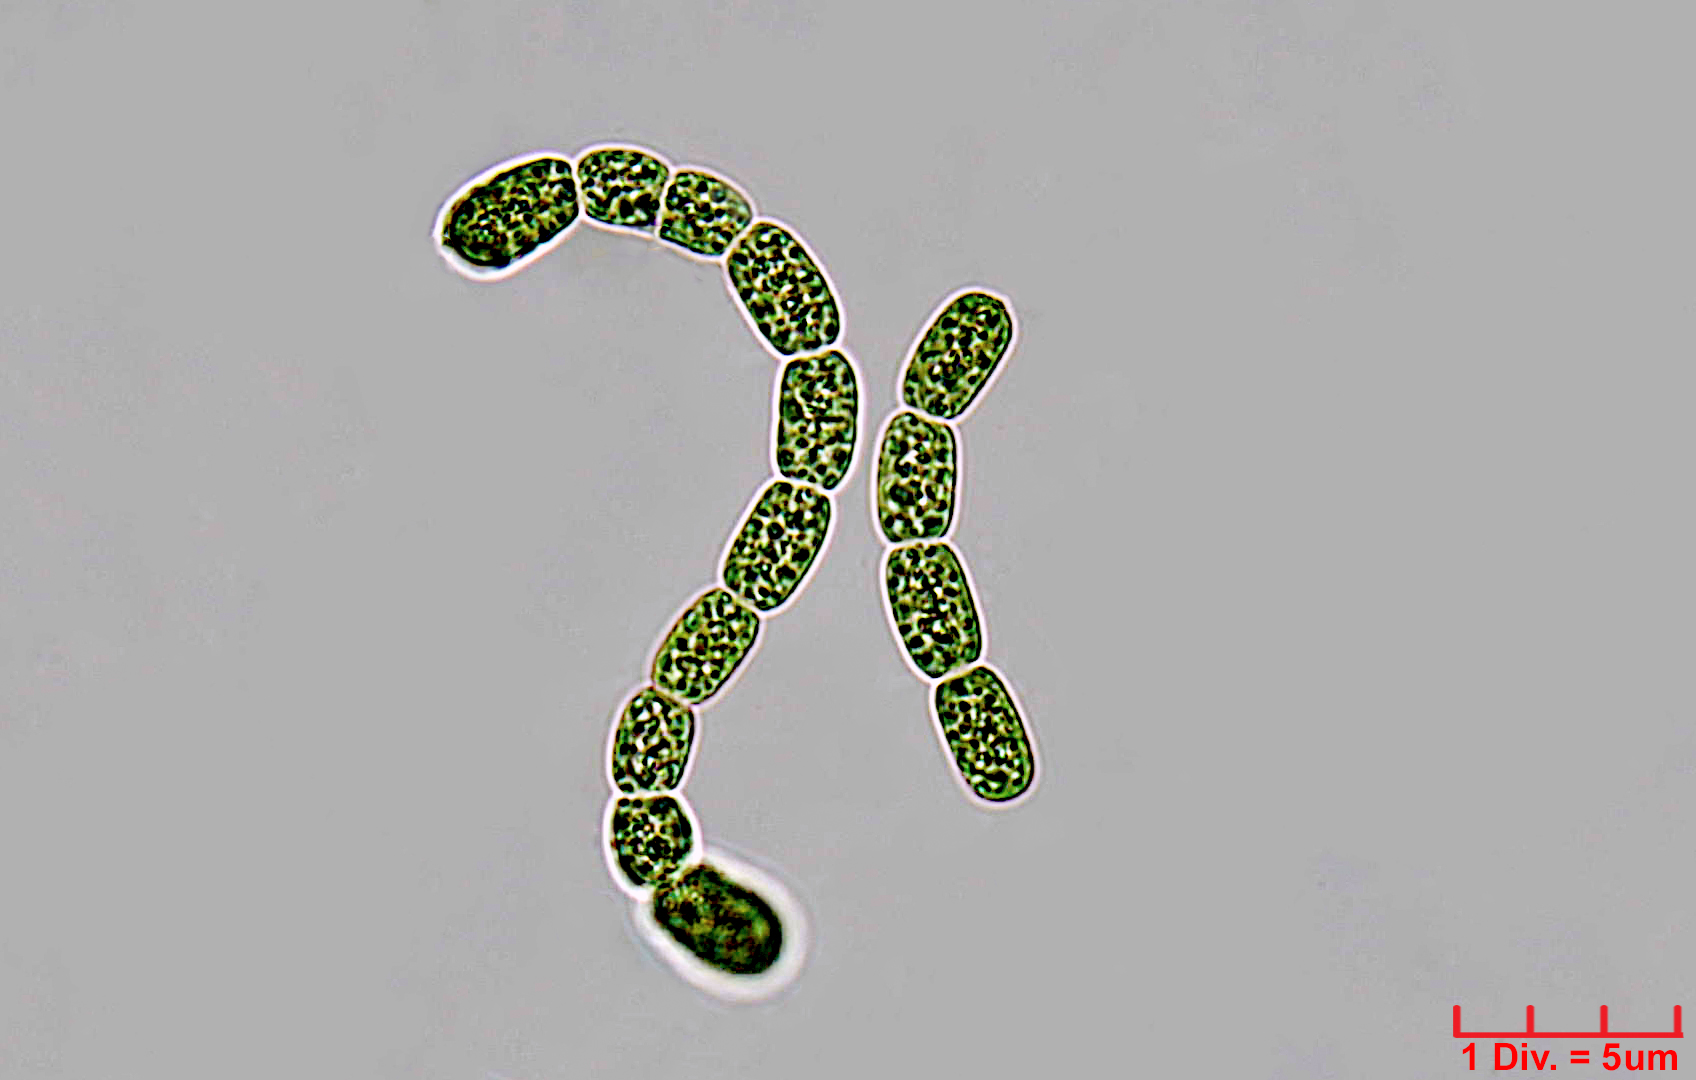 ././Cyanobacteria/Nostocales/Nostocaceae/Desmonostoc/muscorum/desmonostoc-muscorum-593.jpg